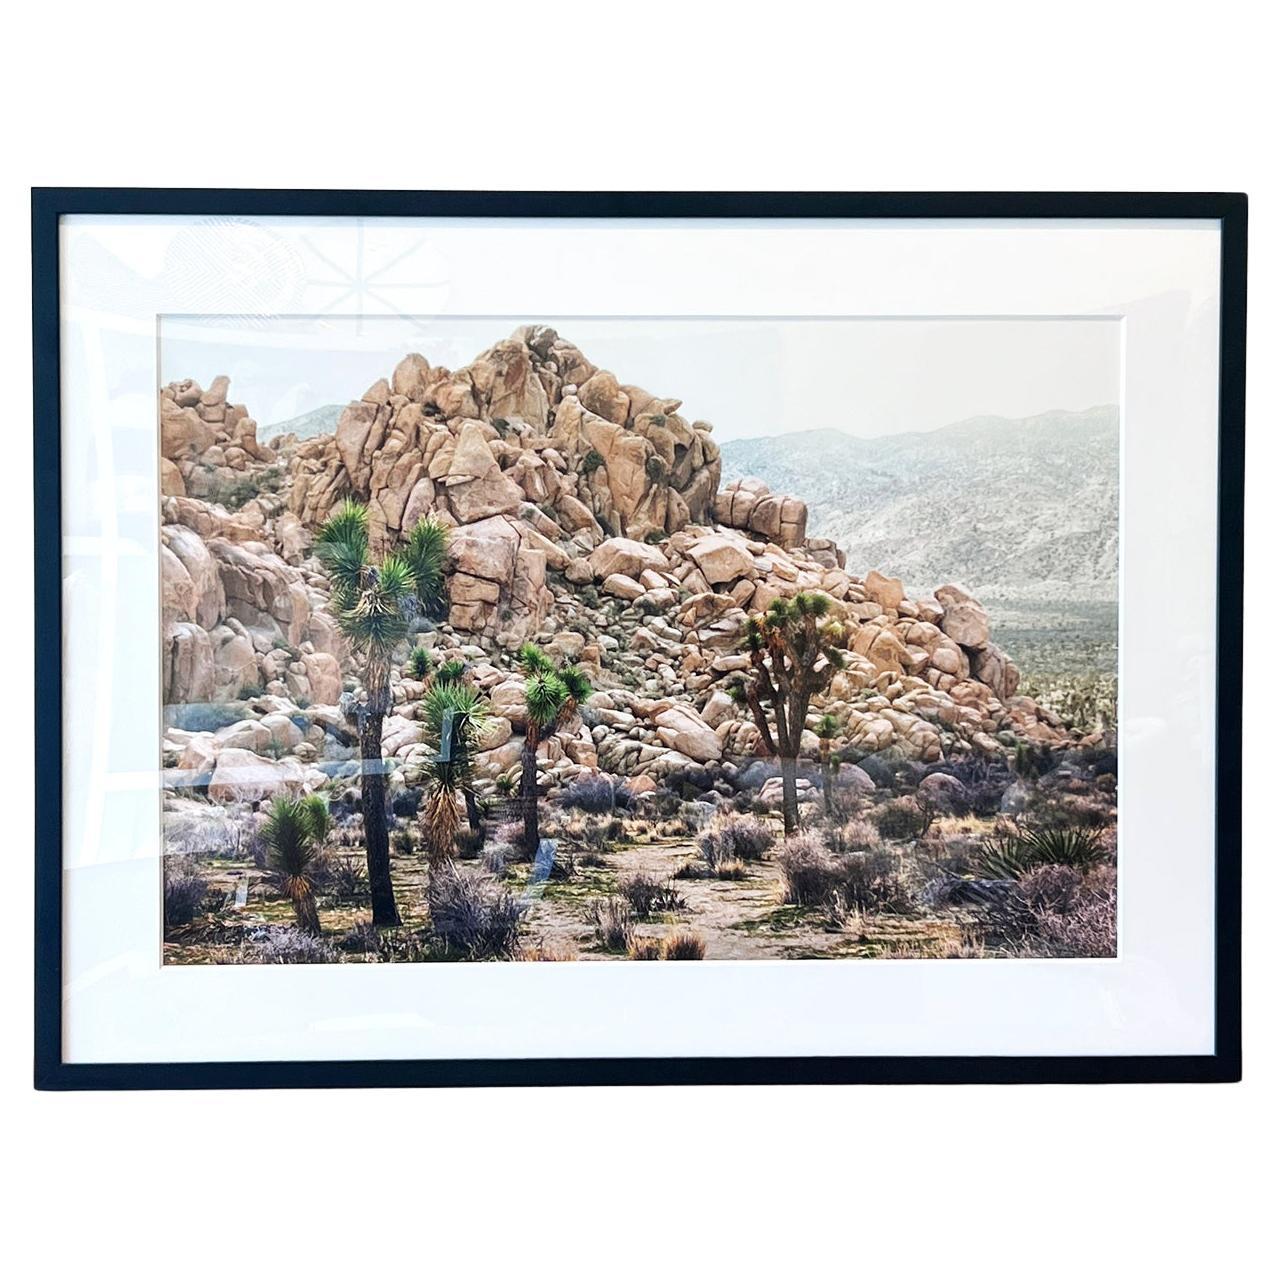 Photographie couleur encadrée Joshua Tree National Park 20"x30" de paysage désert, 2020 en vente